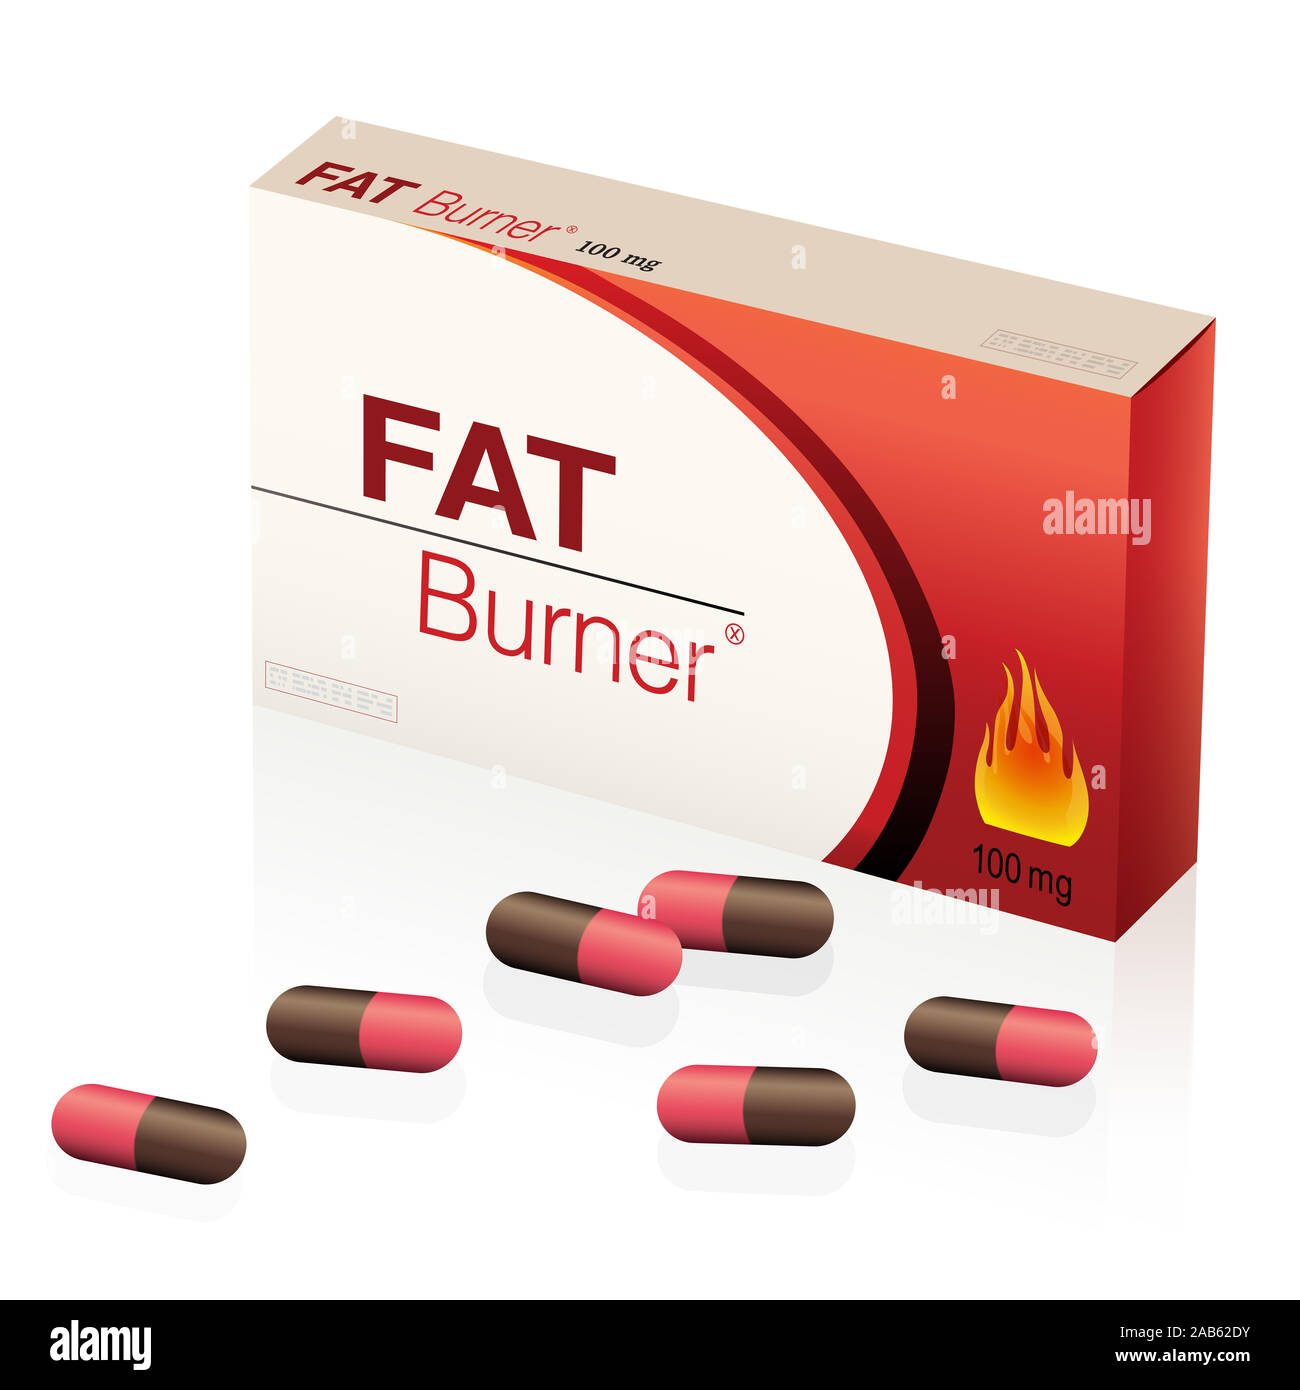 Fat burner Pillen, Packet von Kapseln für pharmazeutische Behandlung, Gewicht zu verlieren, ein medizinisches Produkt-Abbildung auf weißen Hintergrund. Stockfoto